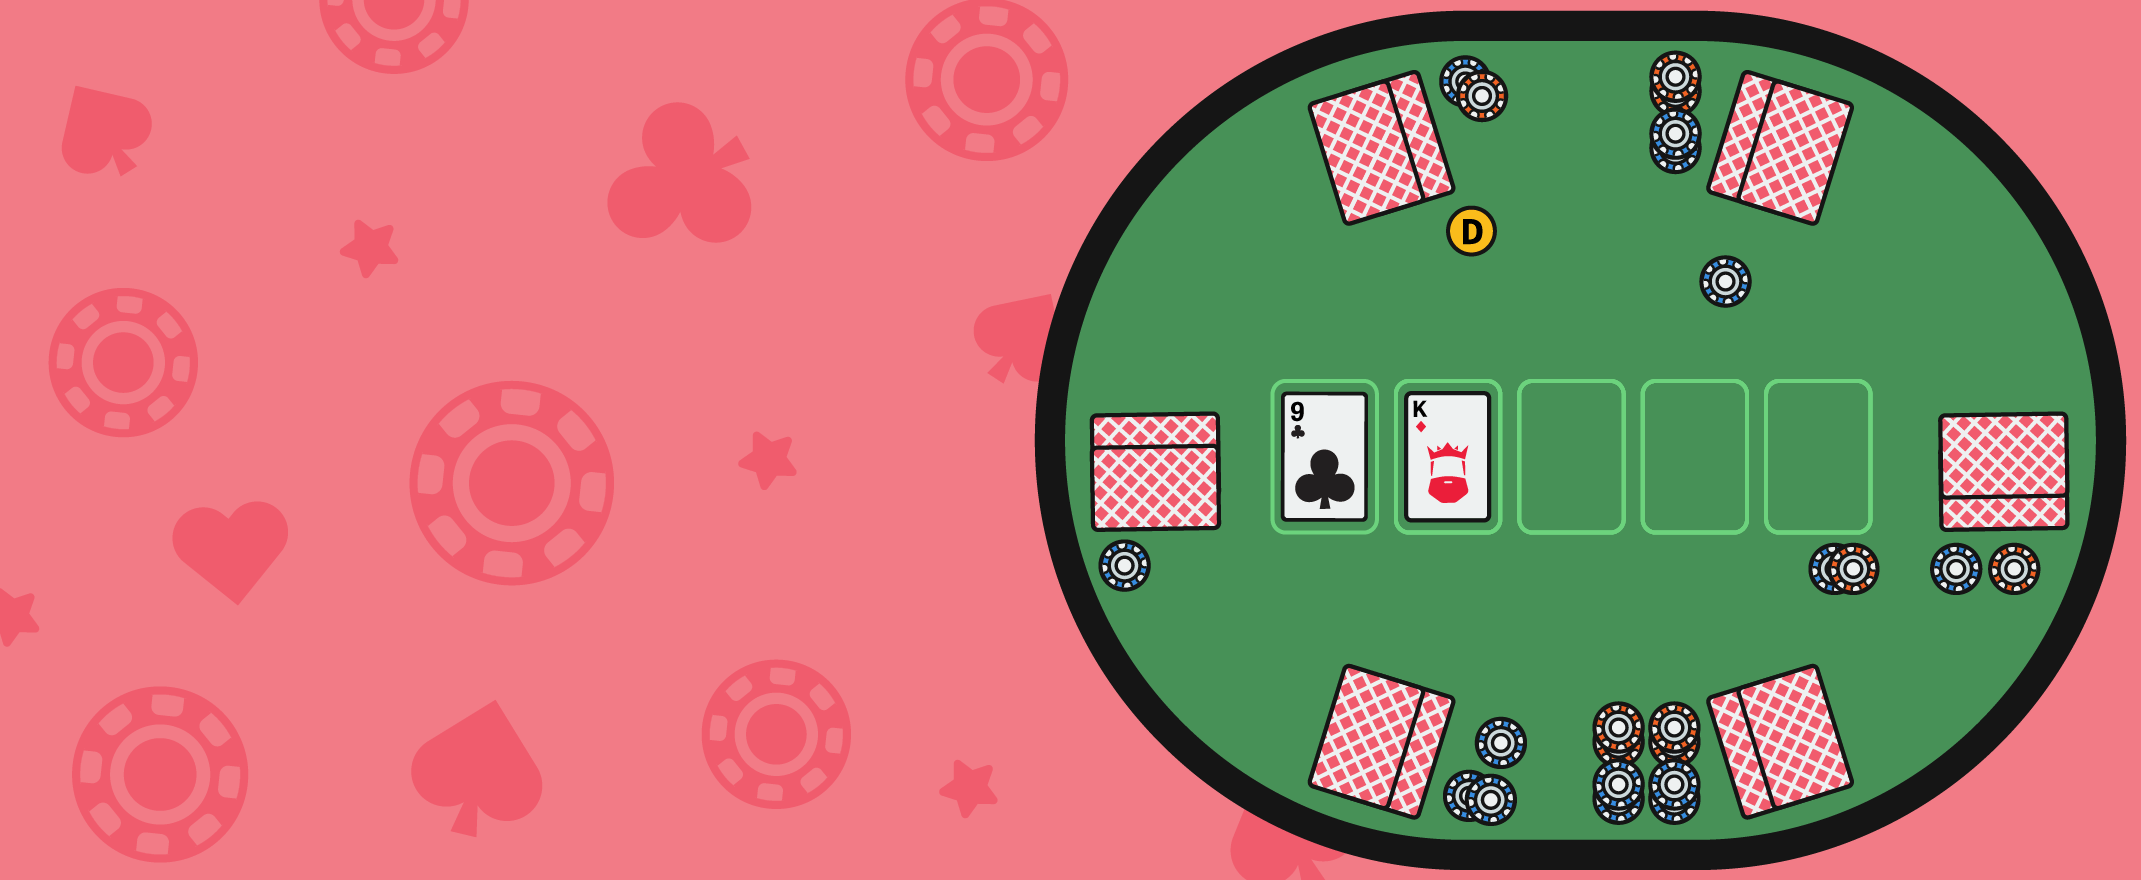 Sådan spiller du poker – en guide for begyndere